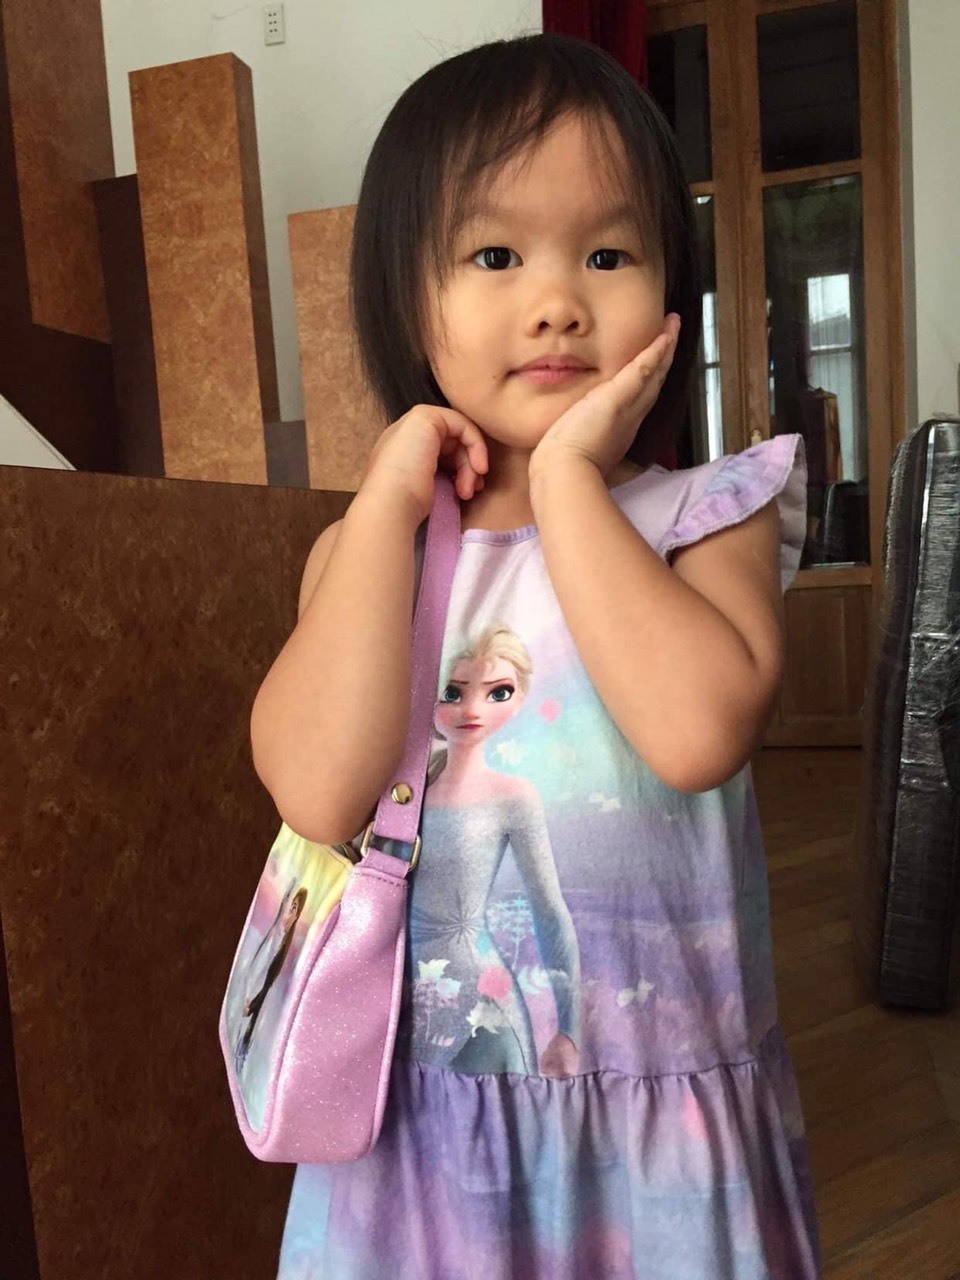  
Gương mặt xinh xắn, dễ thương của con gái Phan Như Thảo khiến nhiều người "tan chảy" mỗi khi xuất hiện trên trang cá nhân của mẹ. (Ảnh: FBNV)